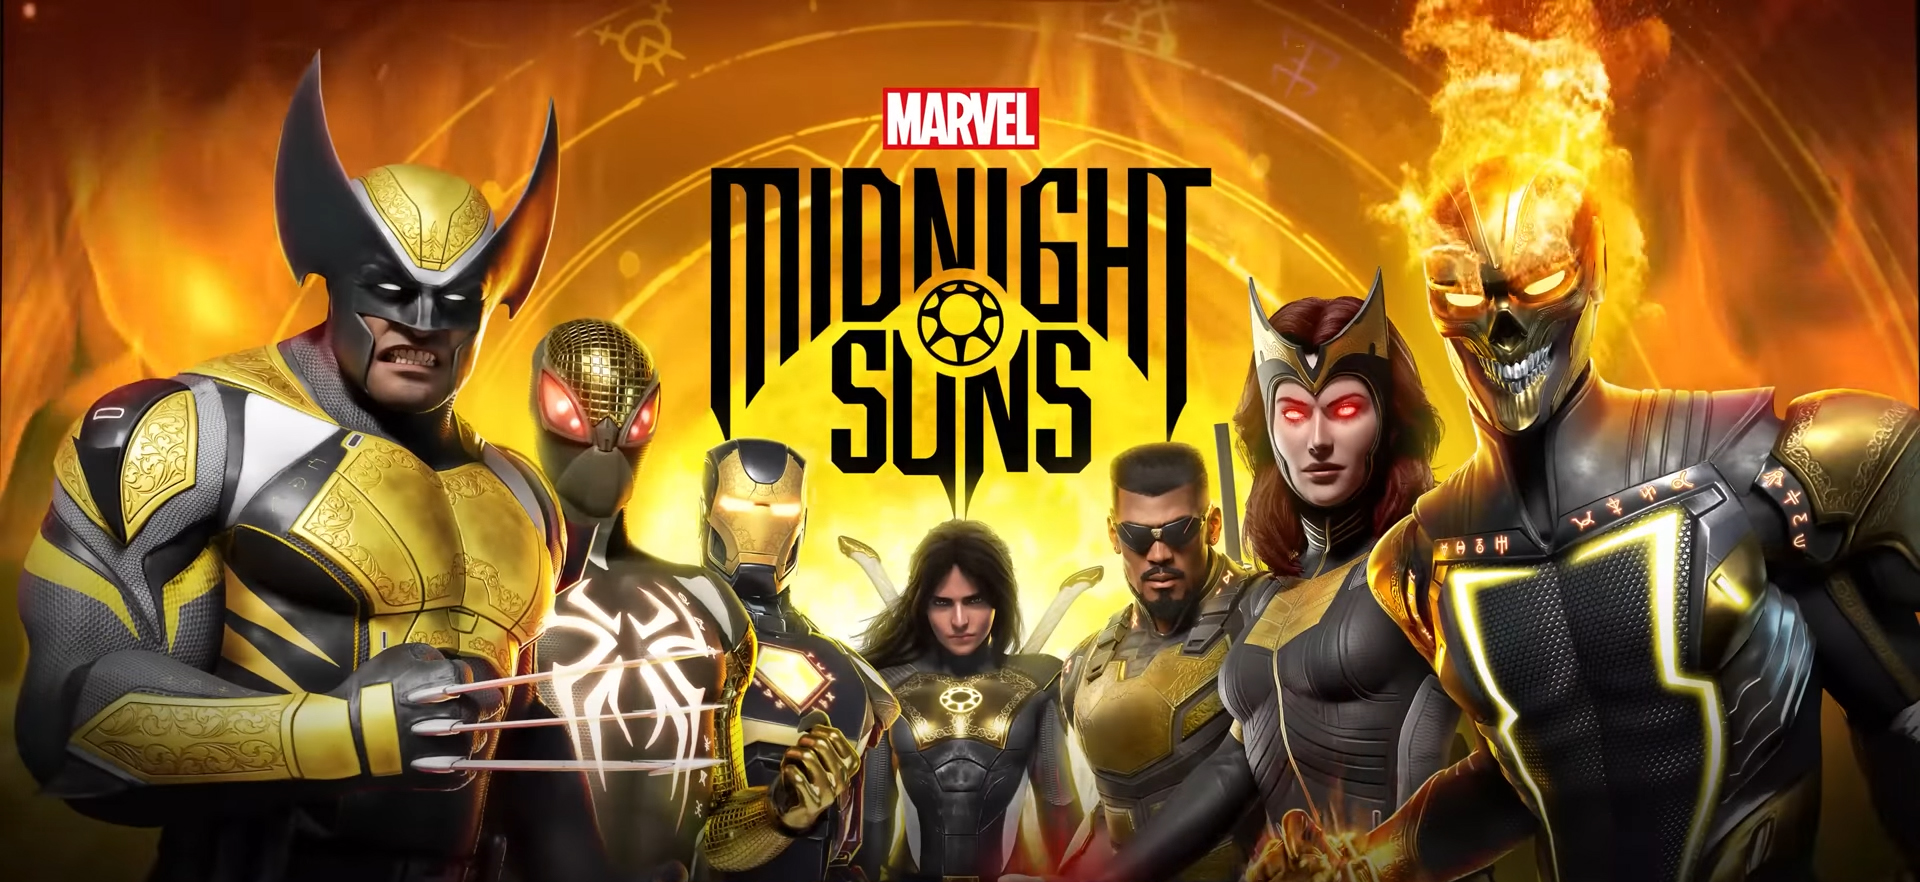 Universo Marvel 616: Confira o trailer com gameplay do personagem Hunter do  jogo Midnight Sons da Marvel